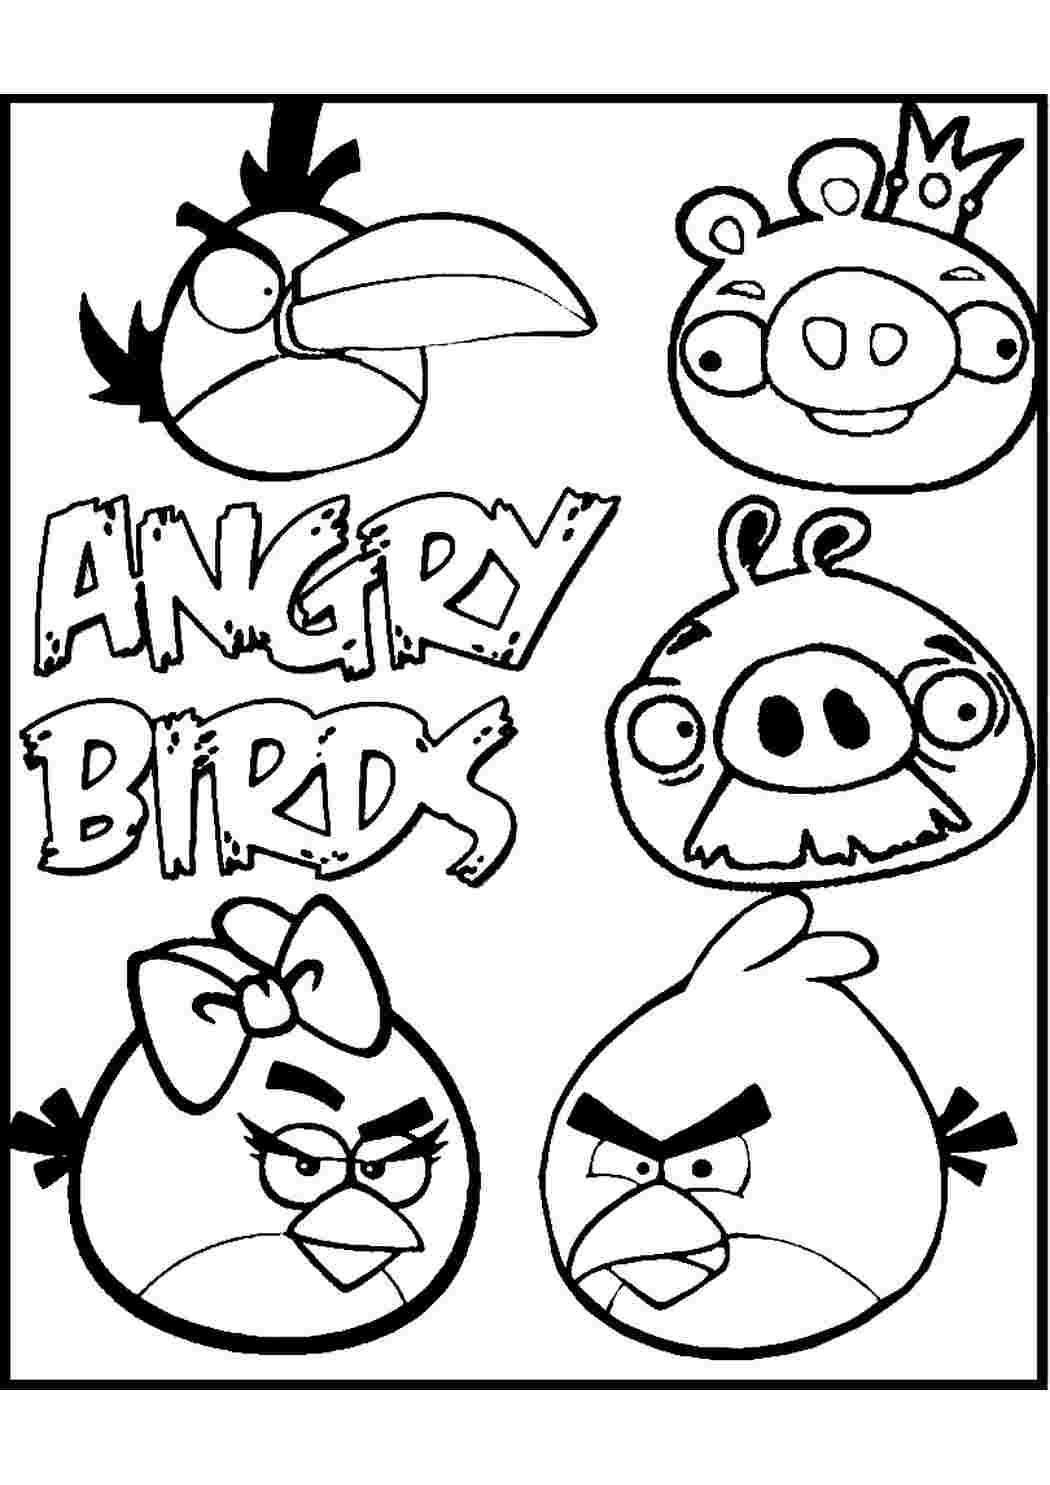 Раскраска Все злые птички, скачать и распечатать раскраску раздела Angry Birds